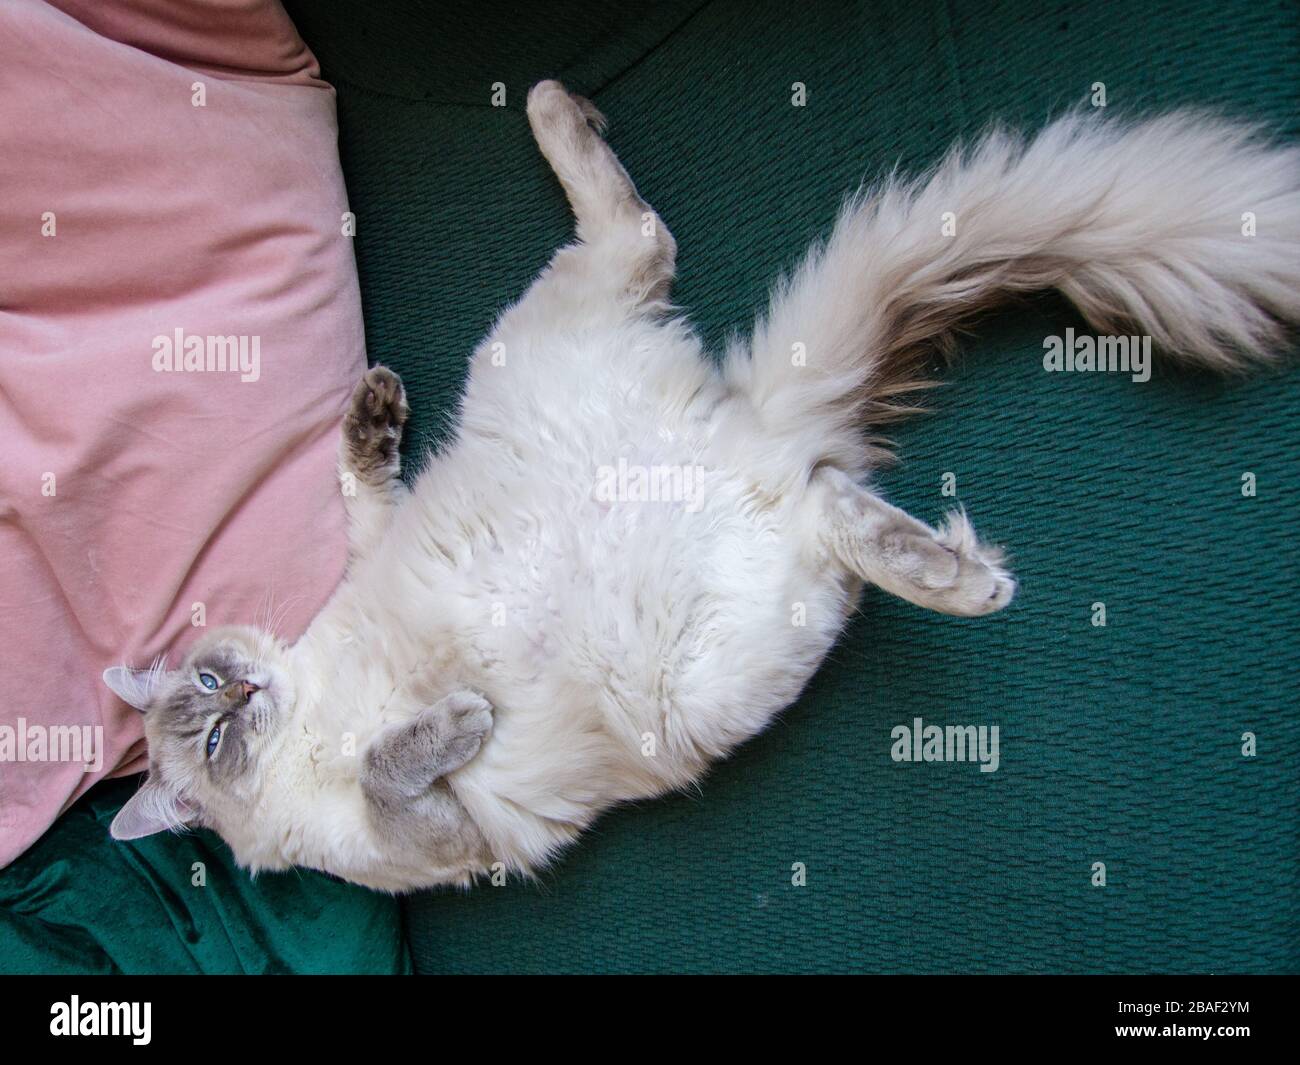 Lazy cat Stock Photo